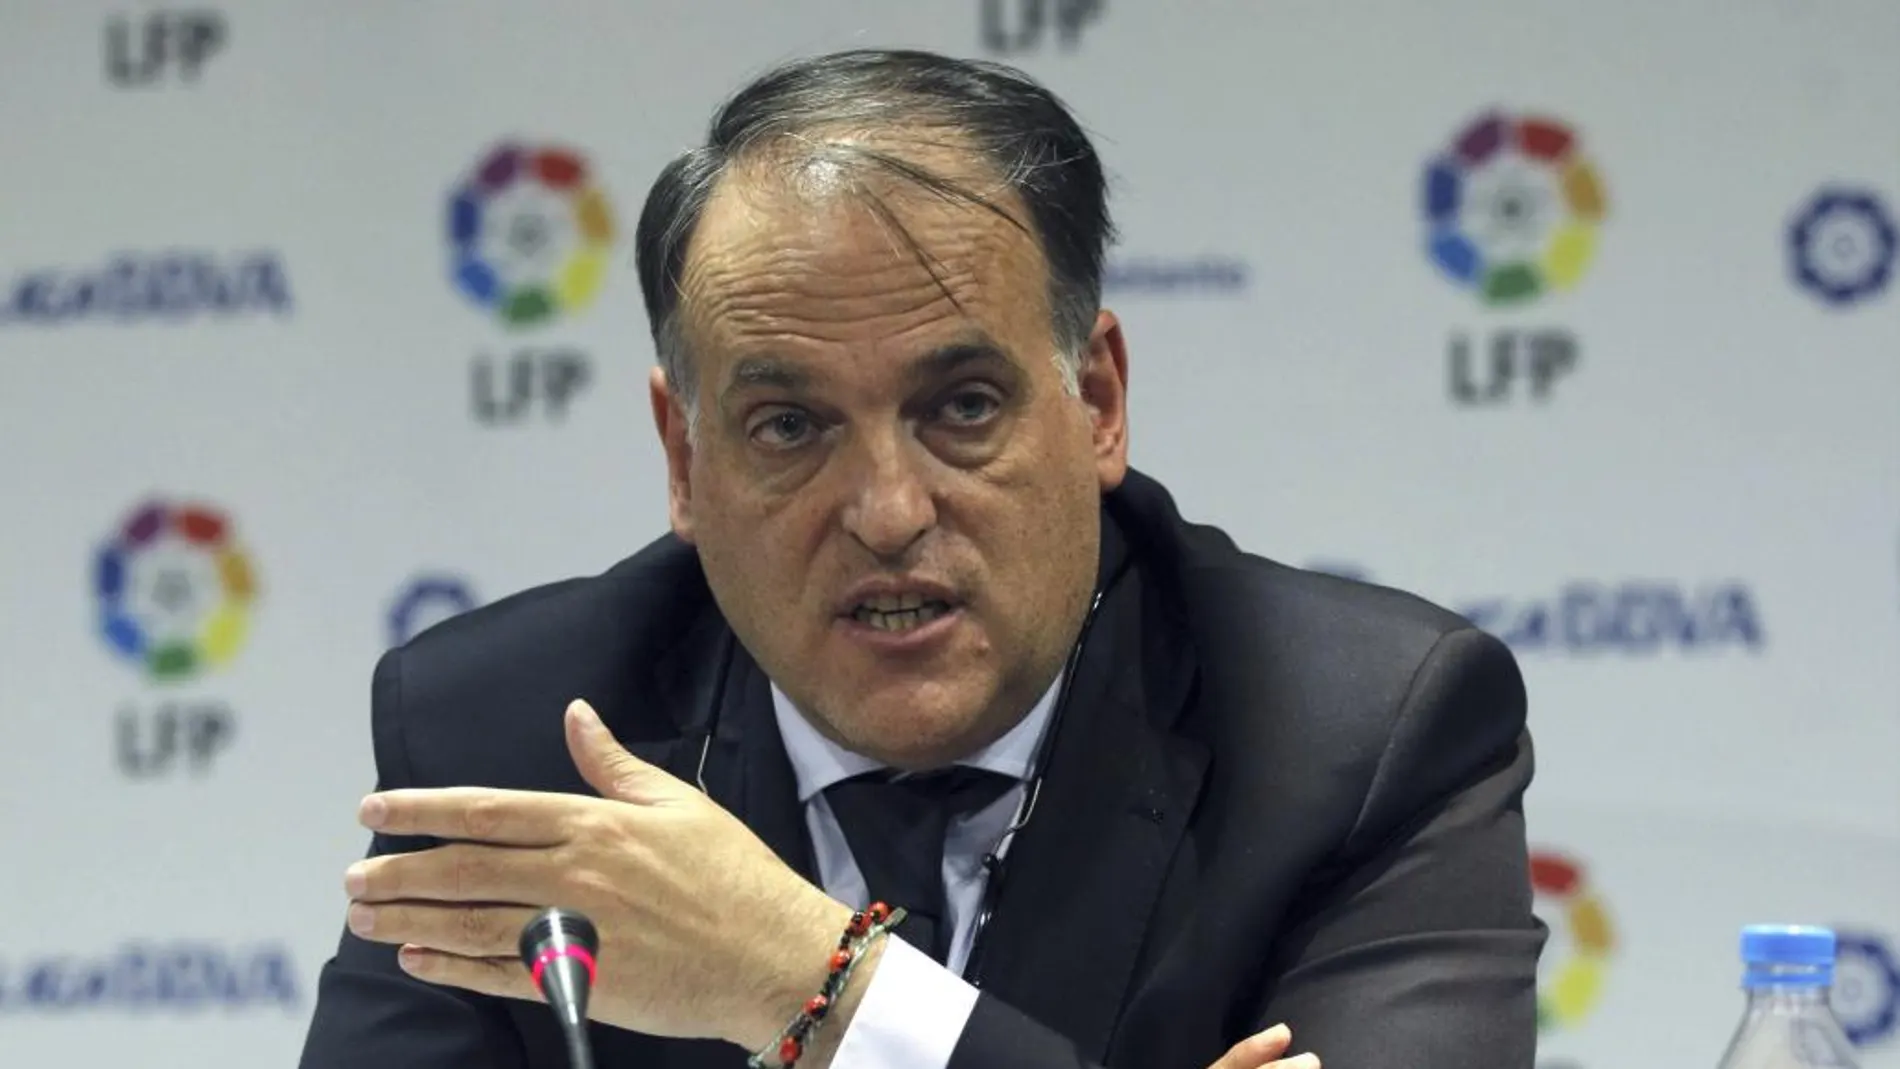 El presidente de la Liga de Fútbol Profesional (LFP), Javier Tebas Medrano